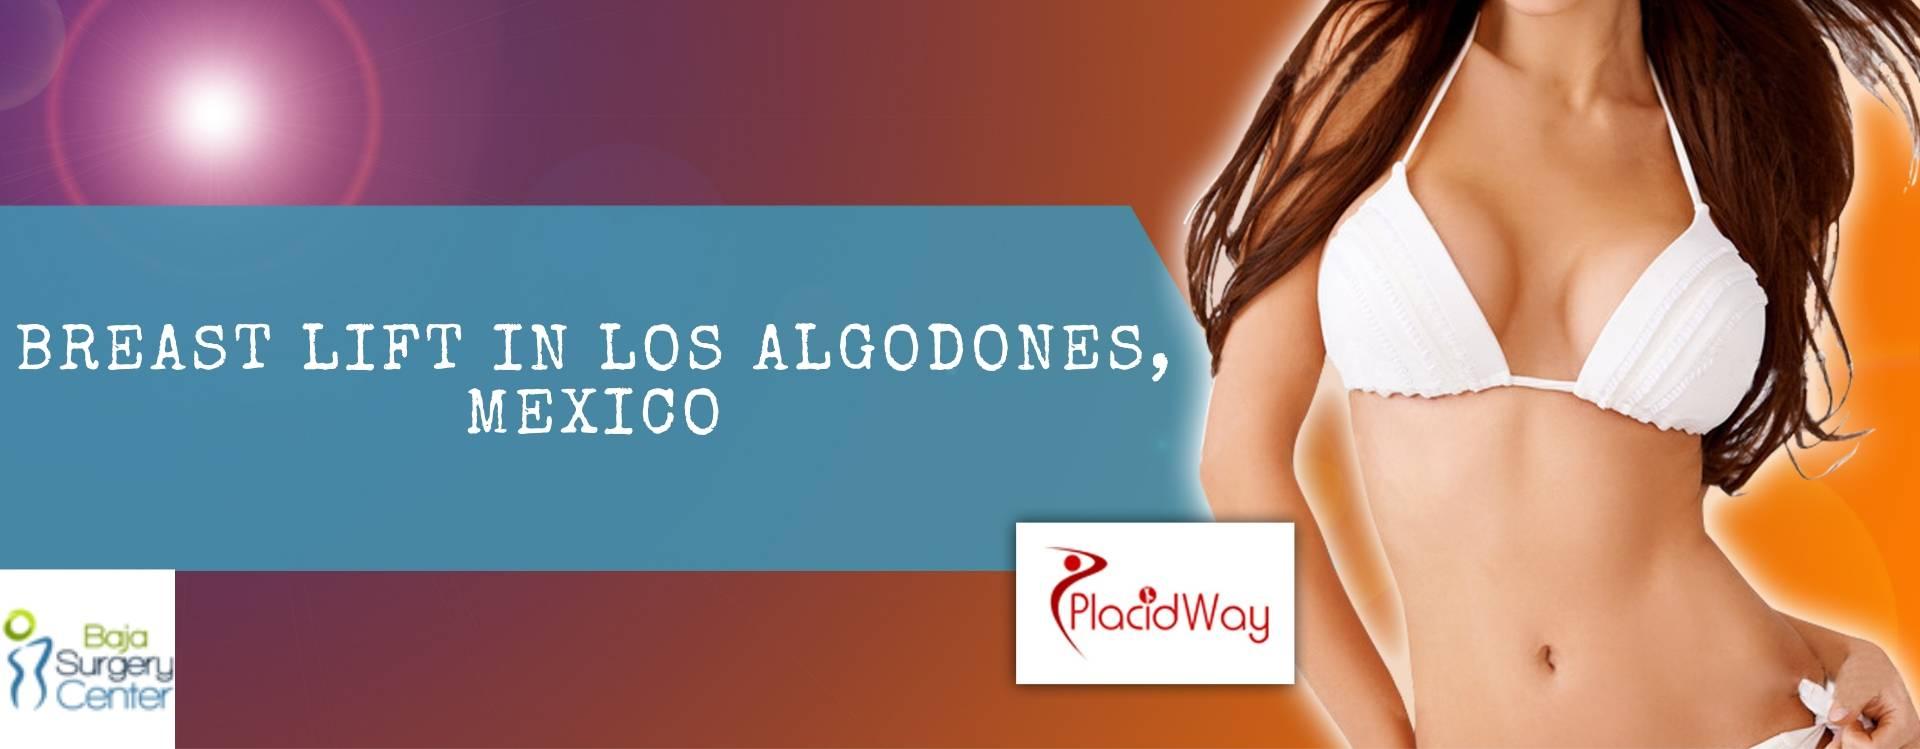 Breast Lift in Los Algodones, Mexico